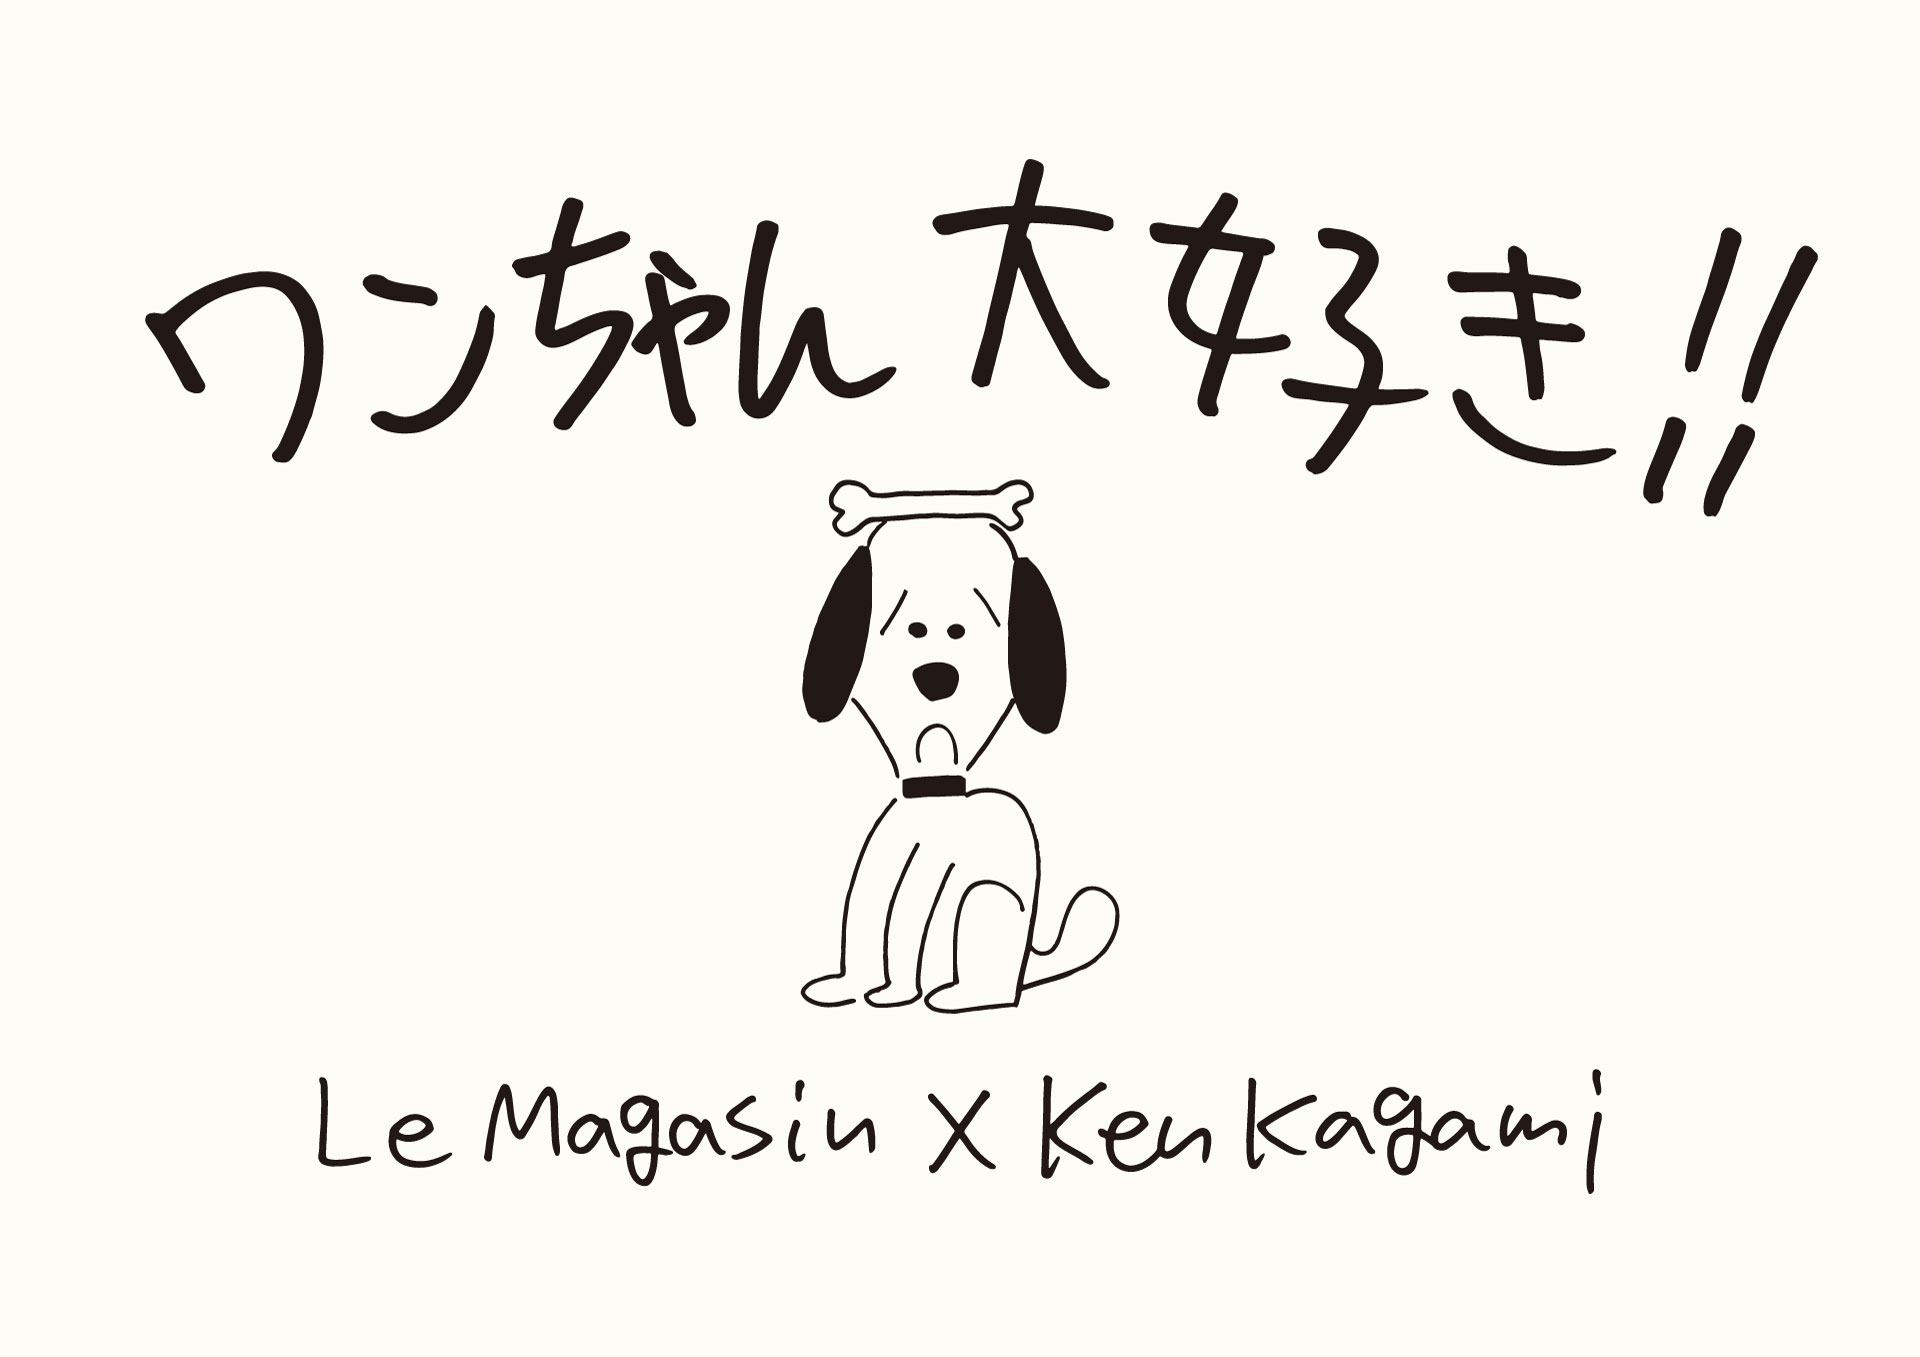 ワンちゃん大好き Adam Et Rope Le Magasin Ken Kagami 10 23 Wed 11 13 Wed 株式会社ジュンのプレスリリース